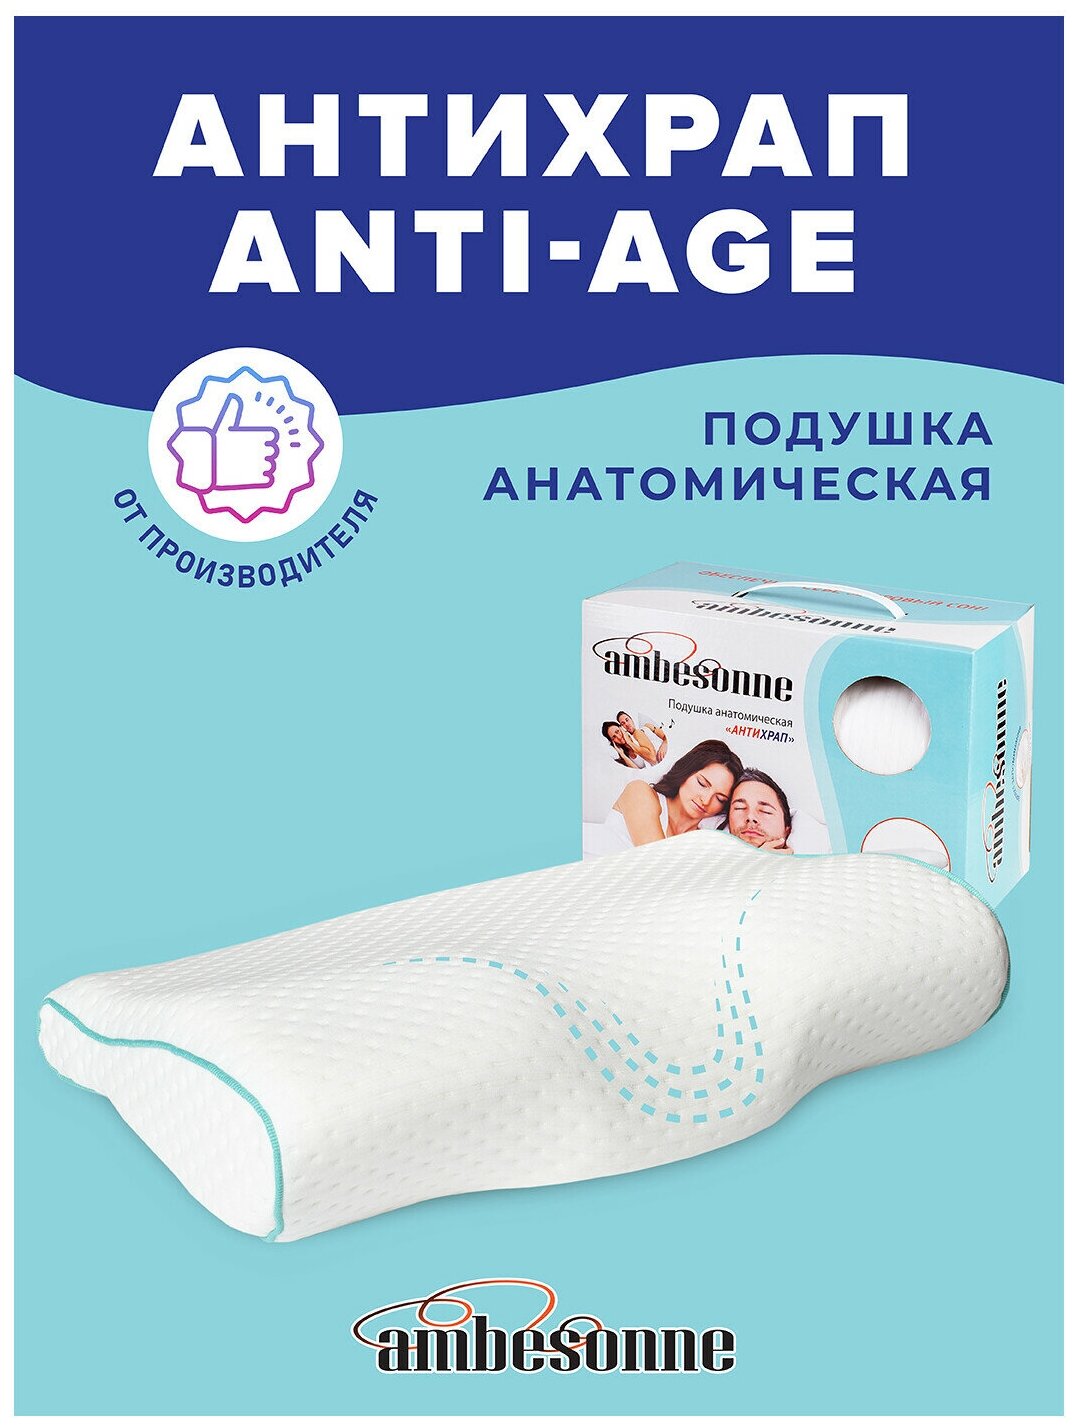 Анатомическая подушка (антихрап) Ambesonne, ортопедическая, с эффектом памяти Memory Foam, 48x29 см